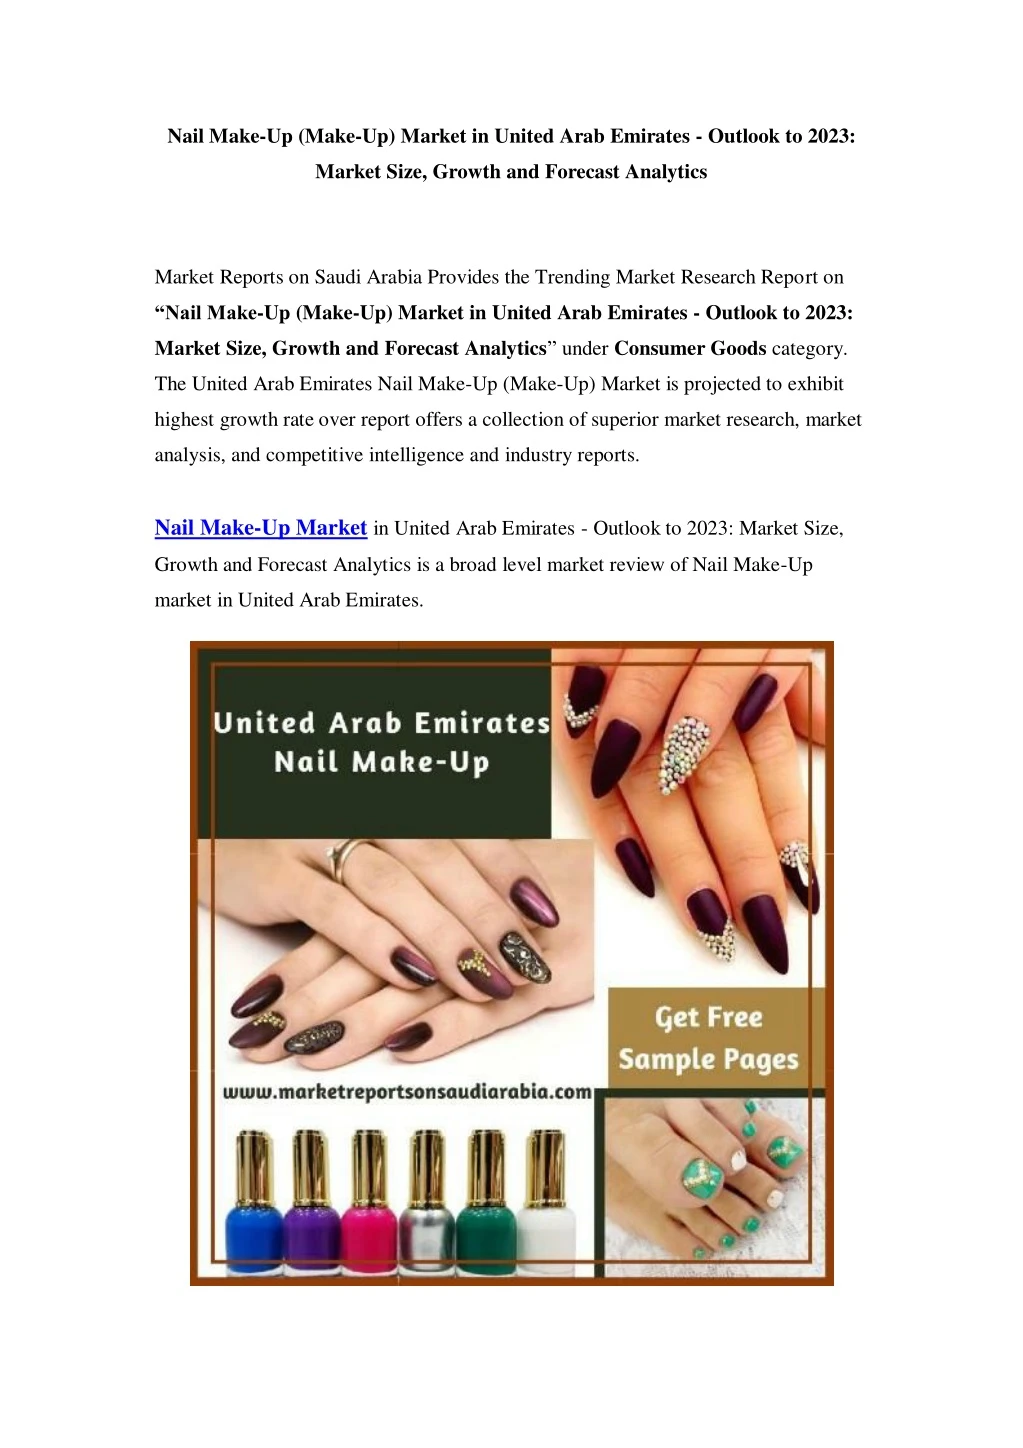 nail make up make up market in united arab